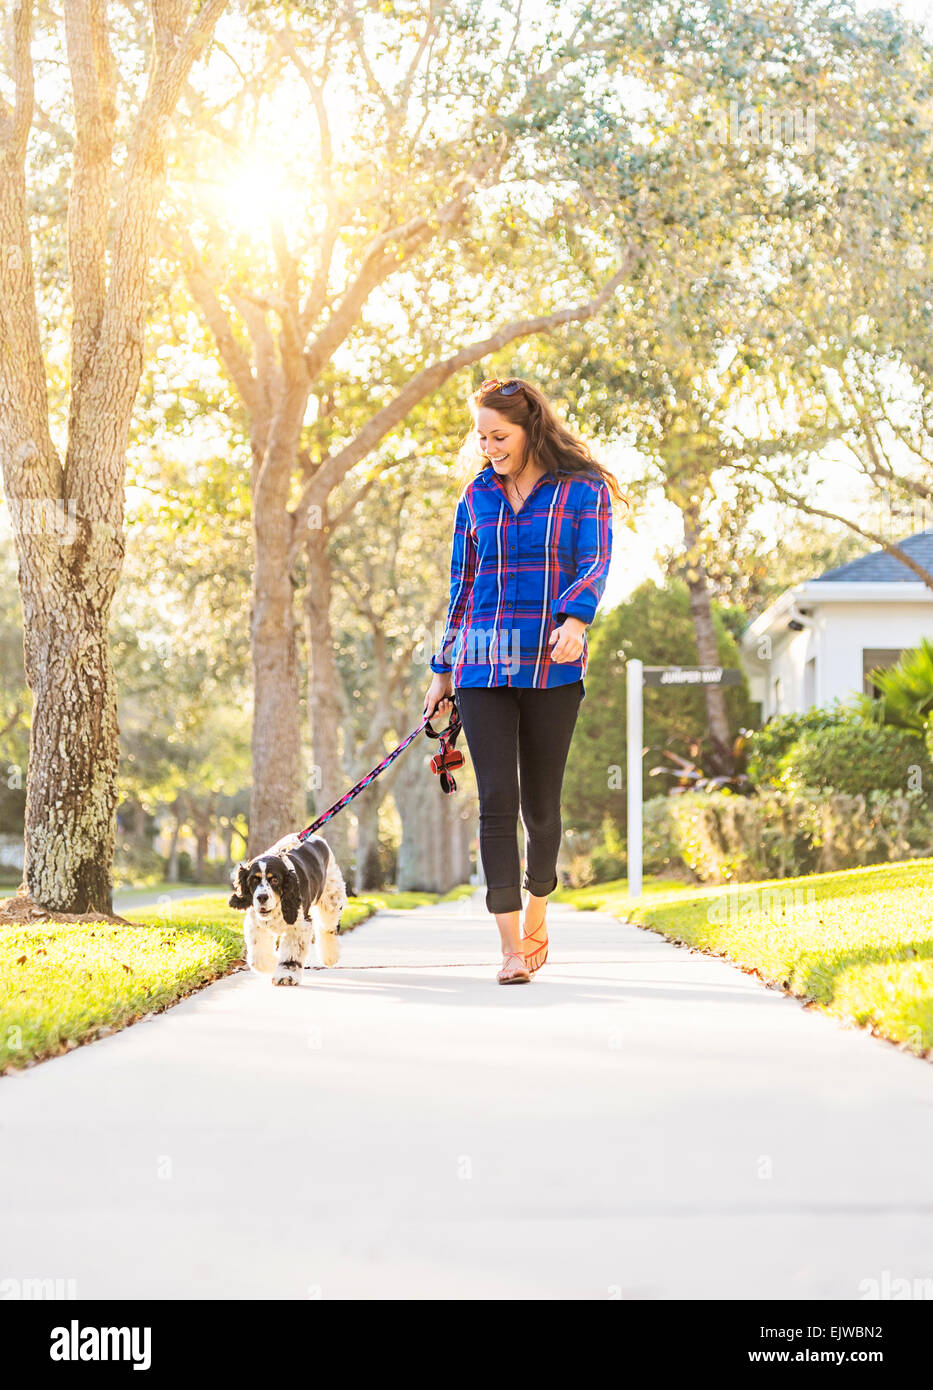 USA, Floride, Jupiter, femme, promener son chien Banque D'Images